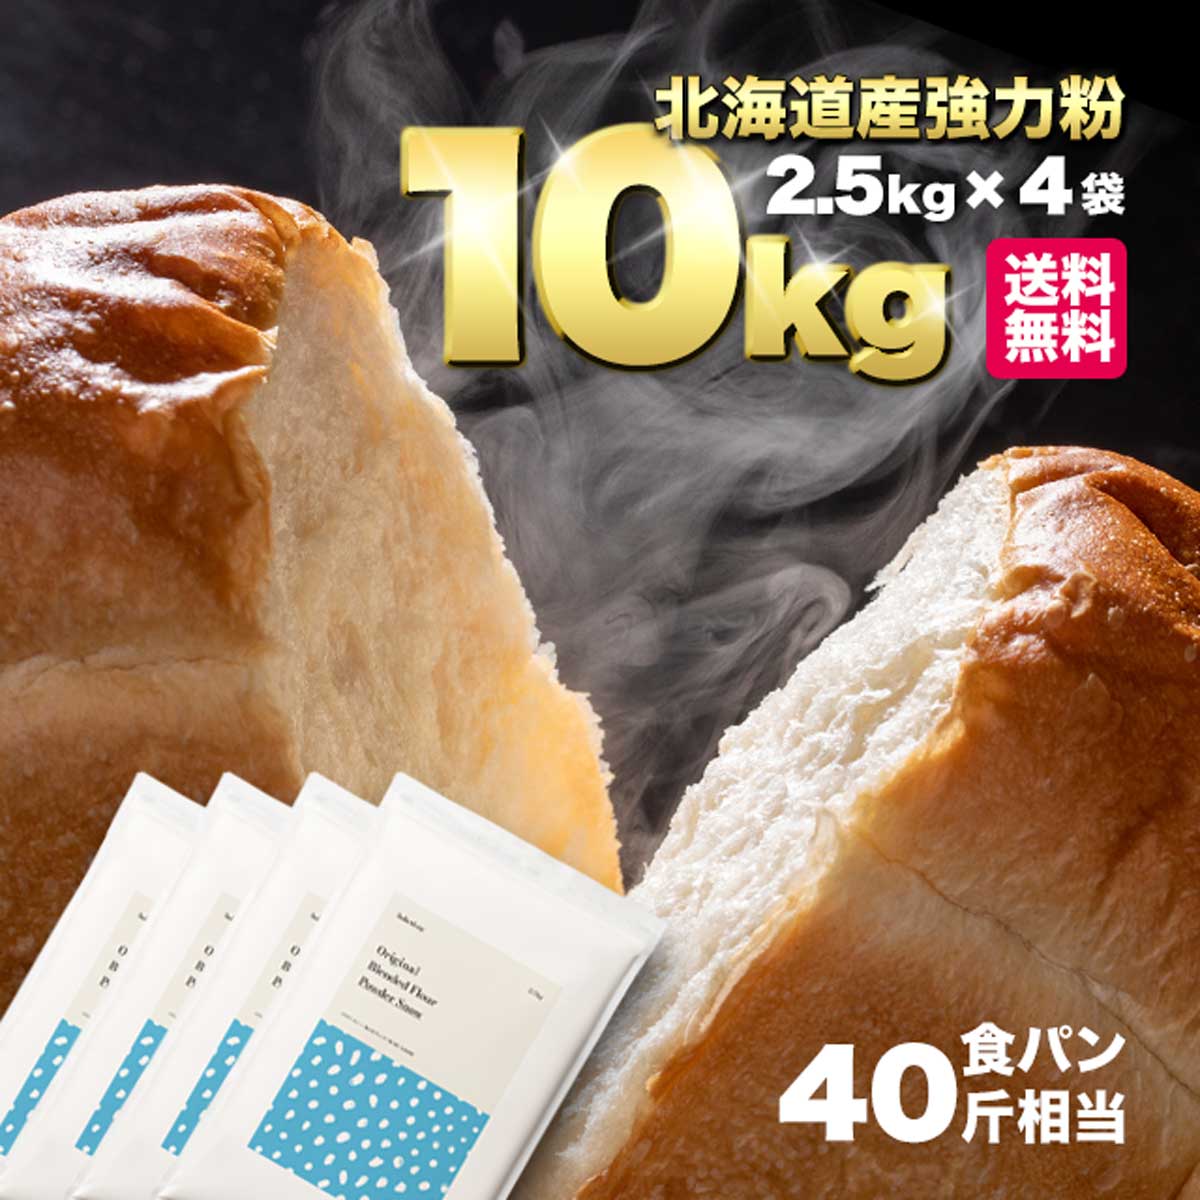 【業務用】日清製粉 小麦粉 バイオレット 25kg (薄力小麦粉)